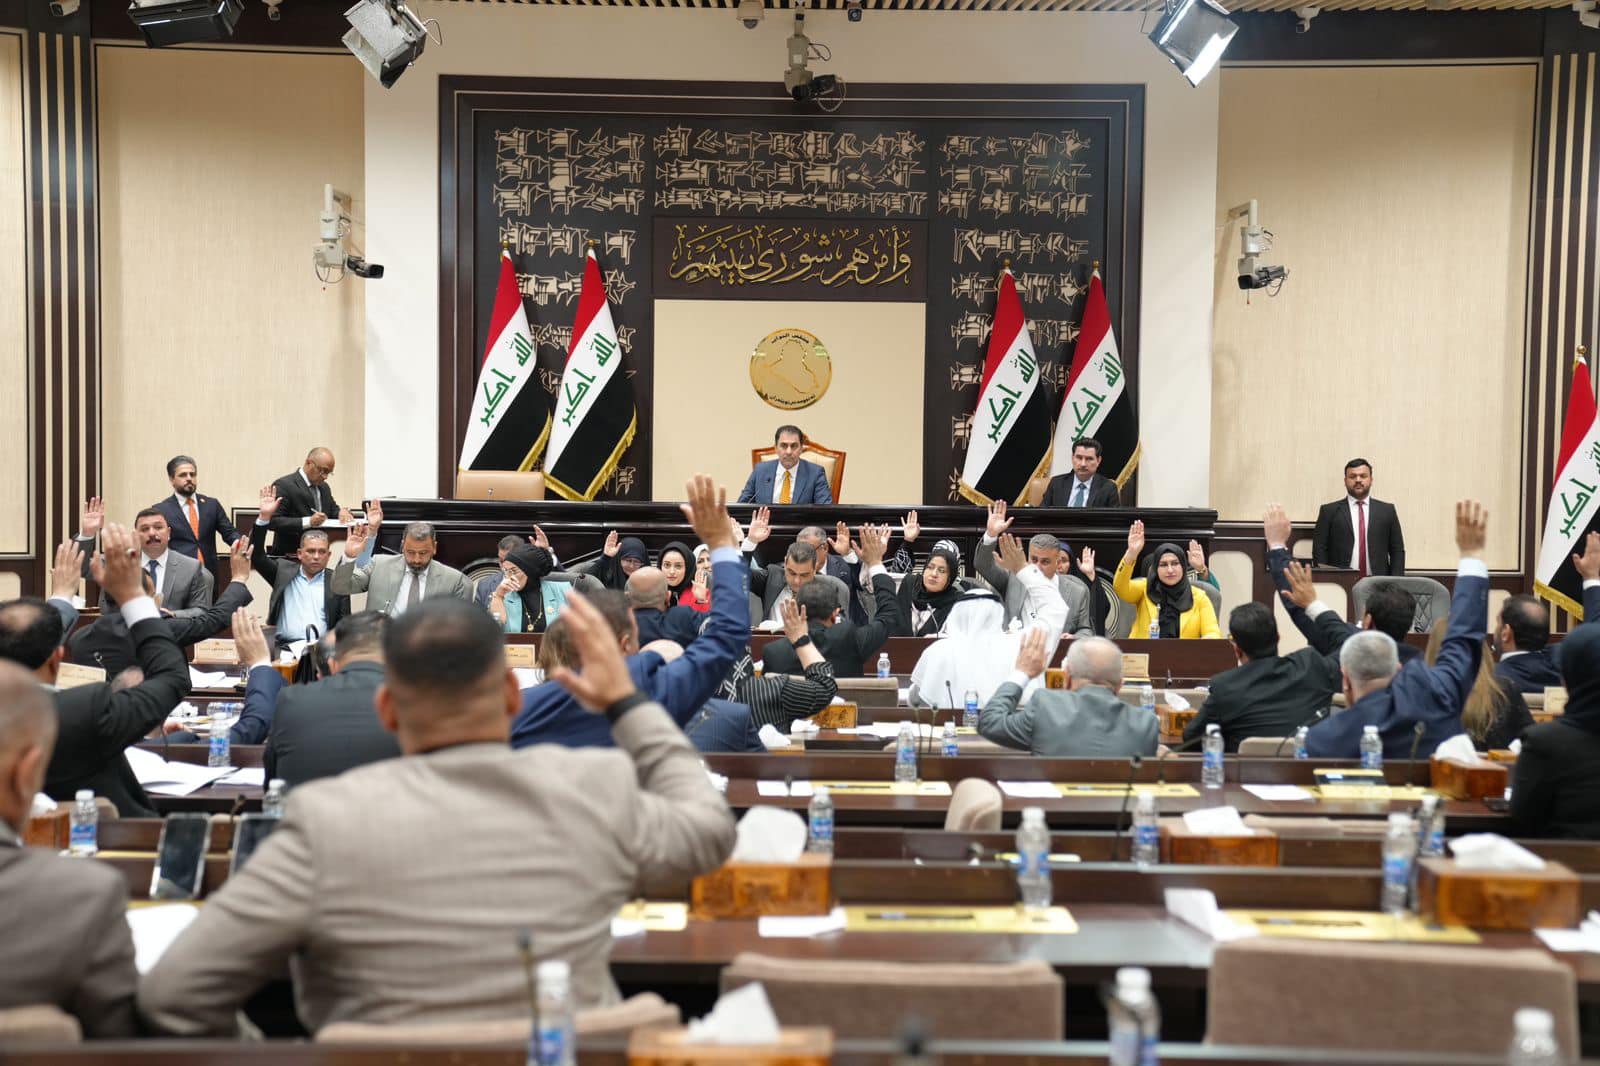 البرلمان العراقي يقرُّ مشروع قانون الضمان الاجتماعي والتقاعد للعمال